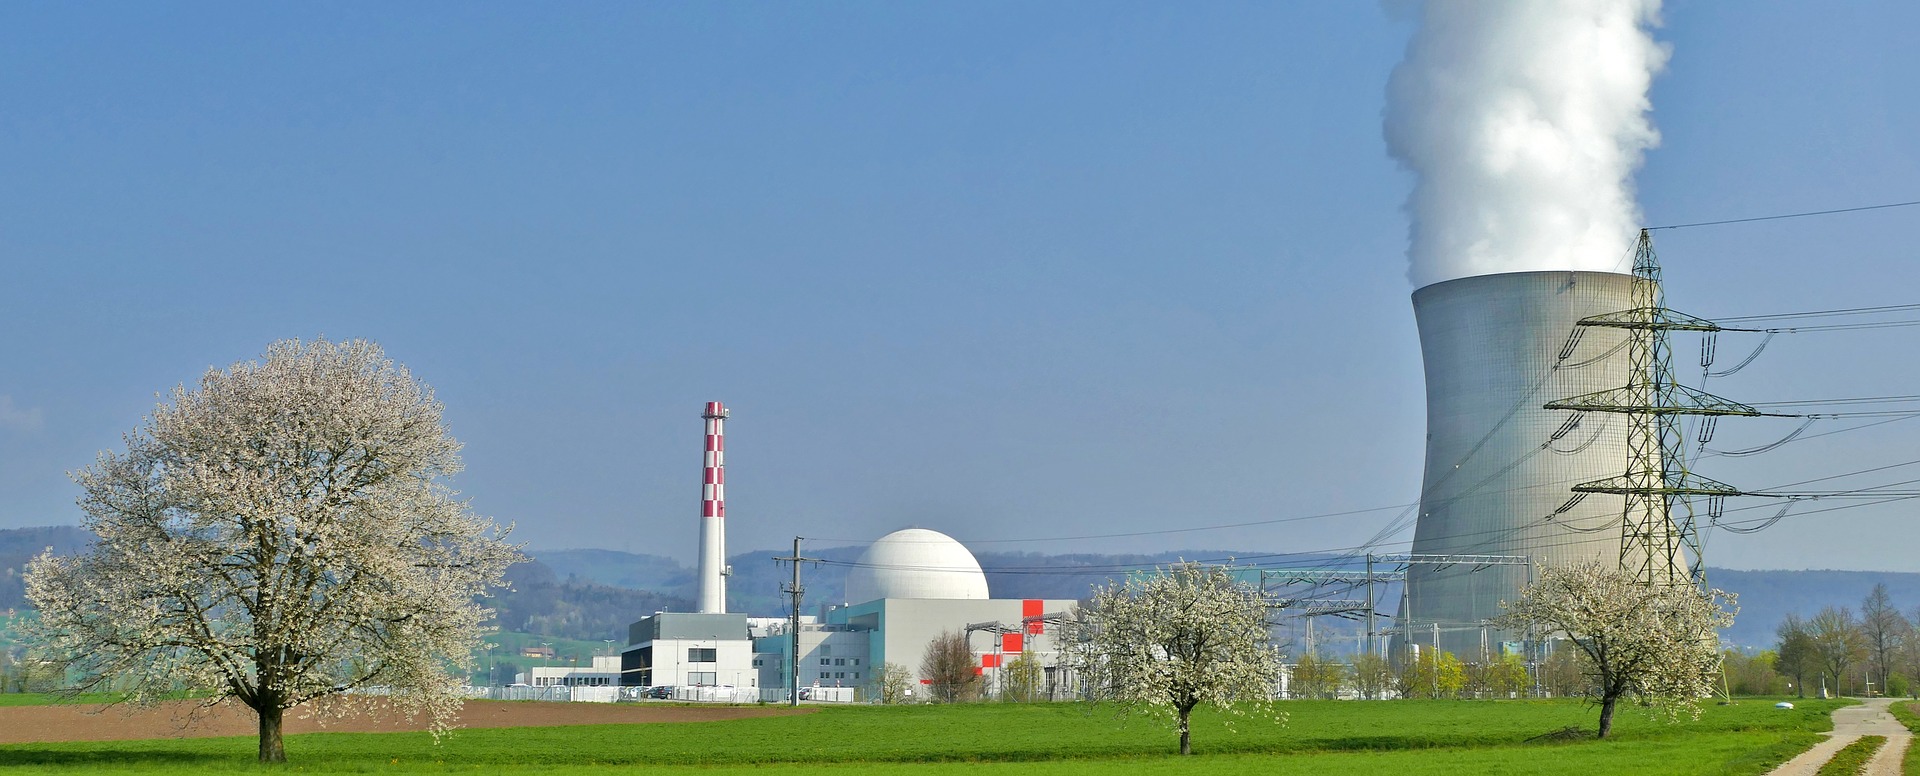 Servicio de vigilancia en instalaciones nucleares y otras infraestructuras críticas.